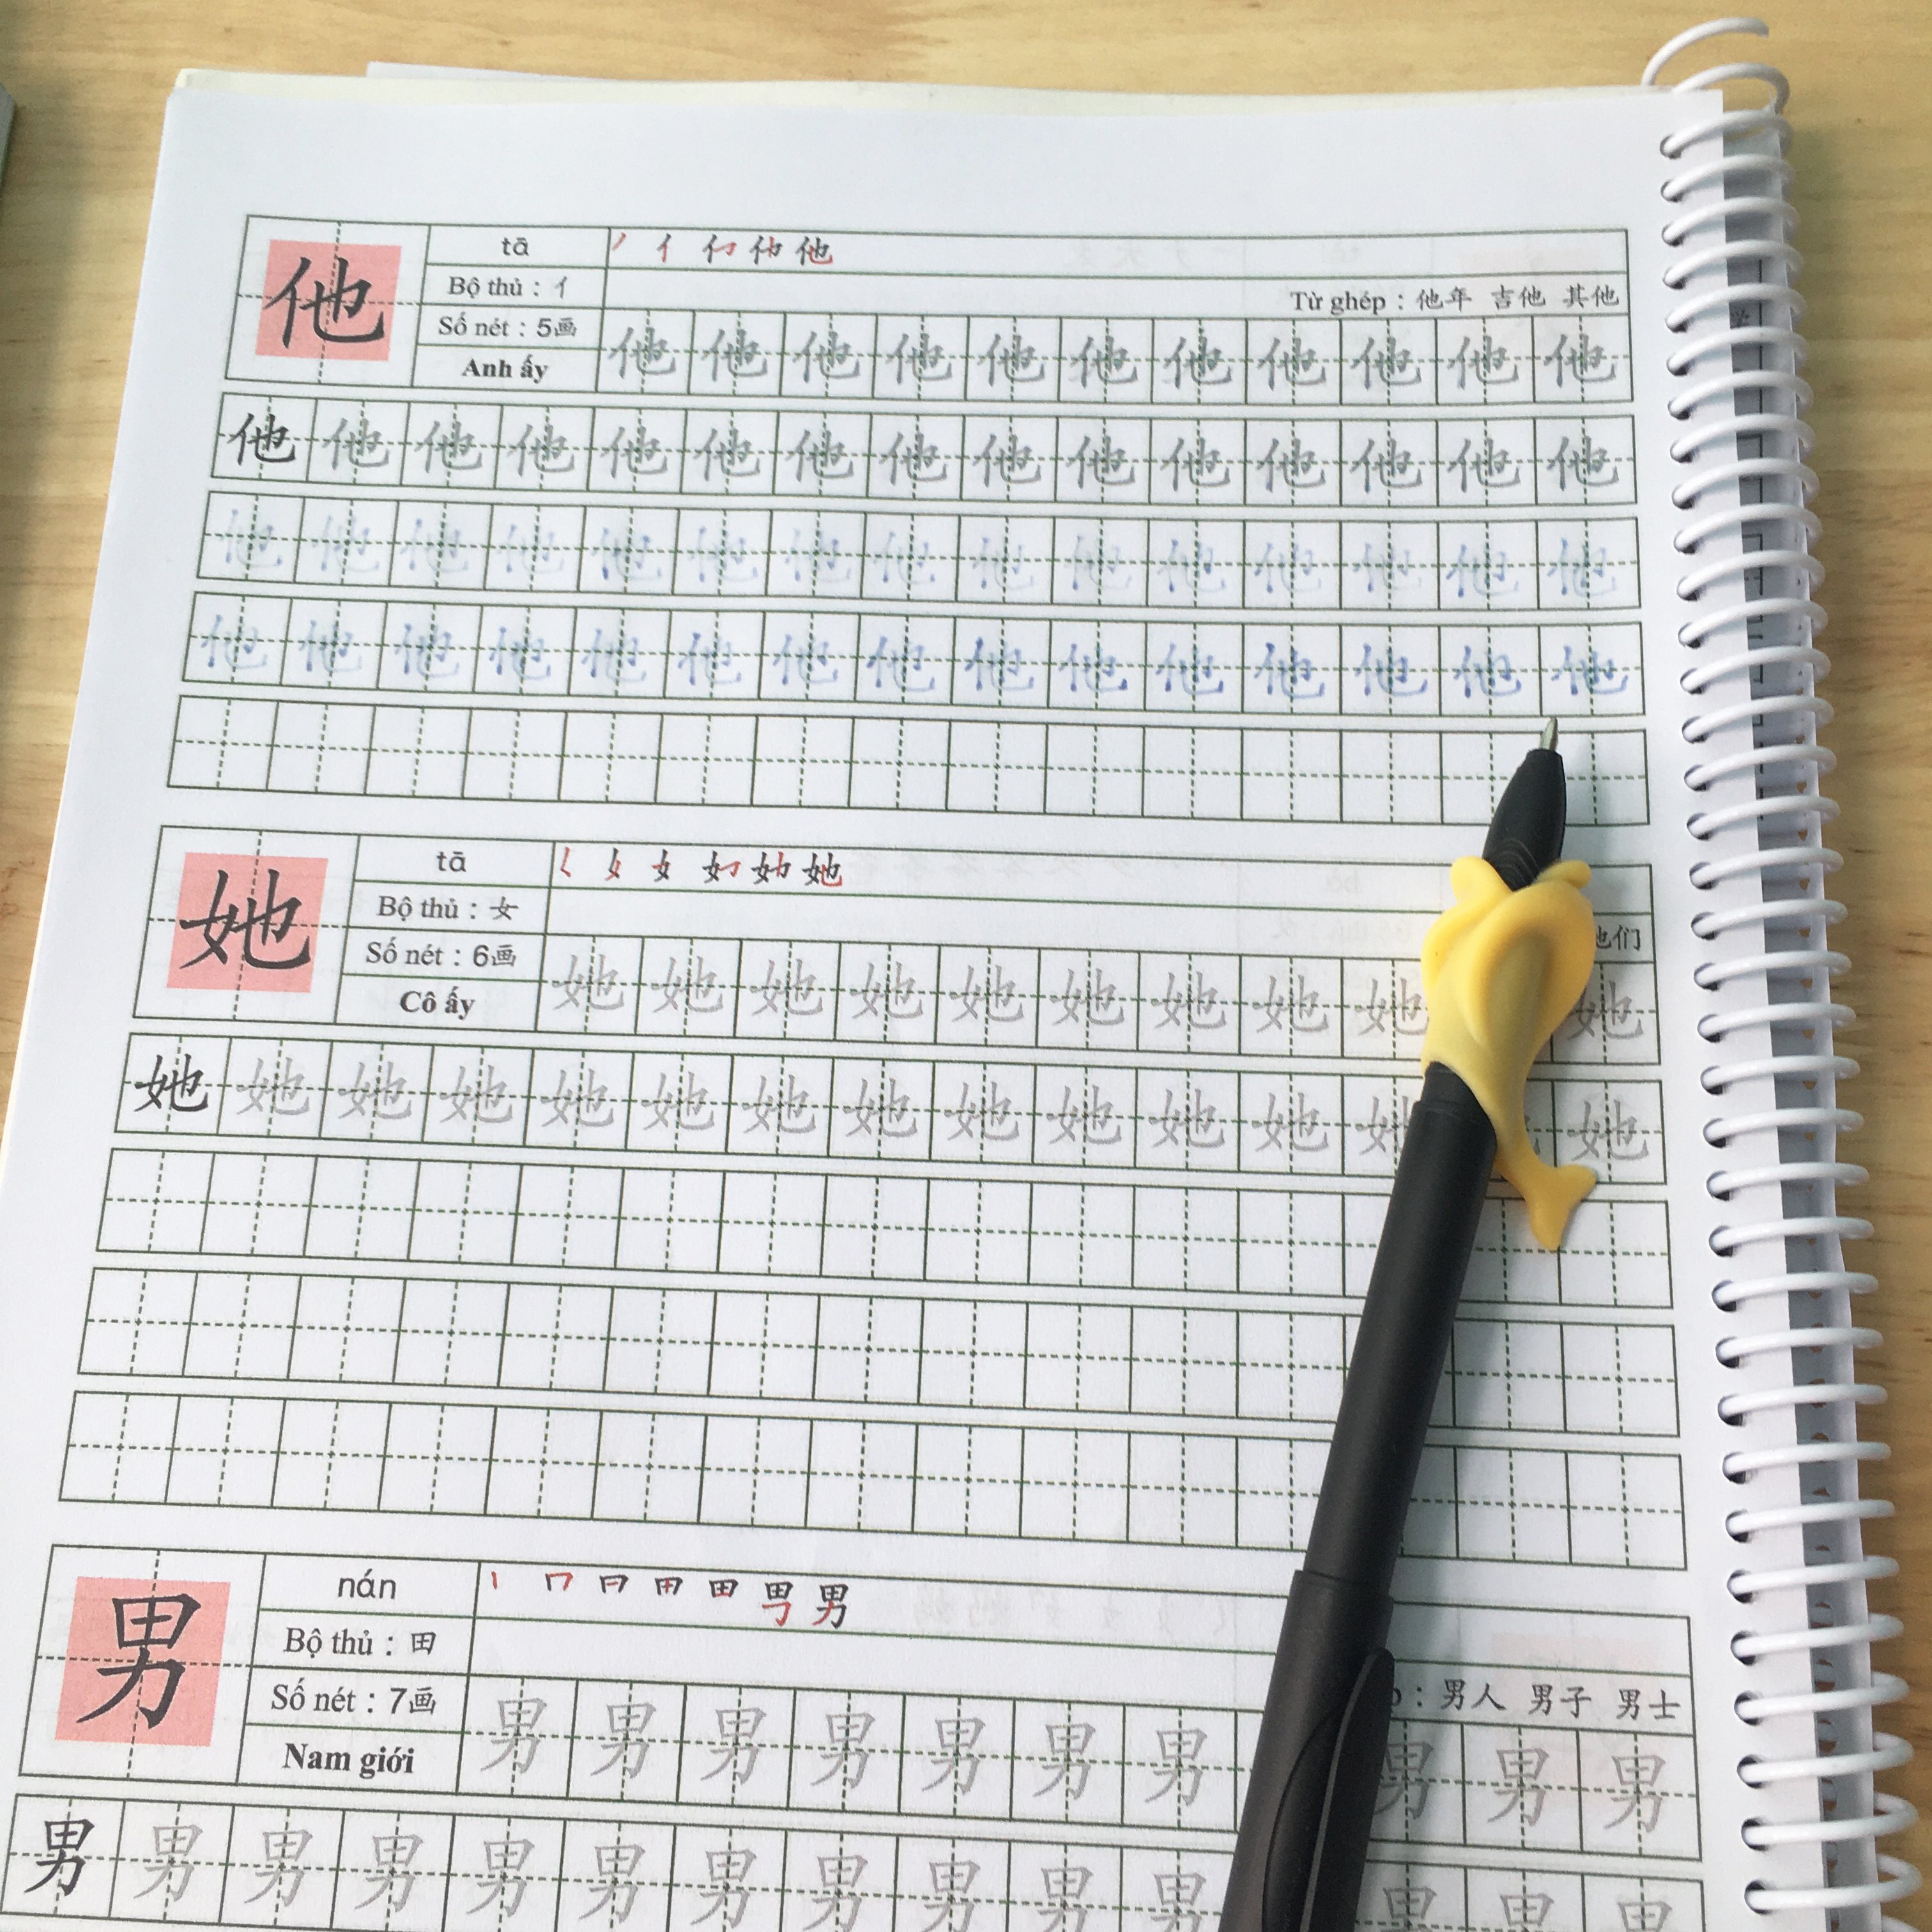 Bộ bút tự bay mực 20 ngòi 1 vỏ 1 đệm luyện viết cho bé, luyện viết chữ Hán-Nhật-Hàn